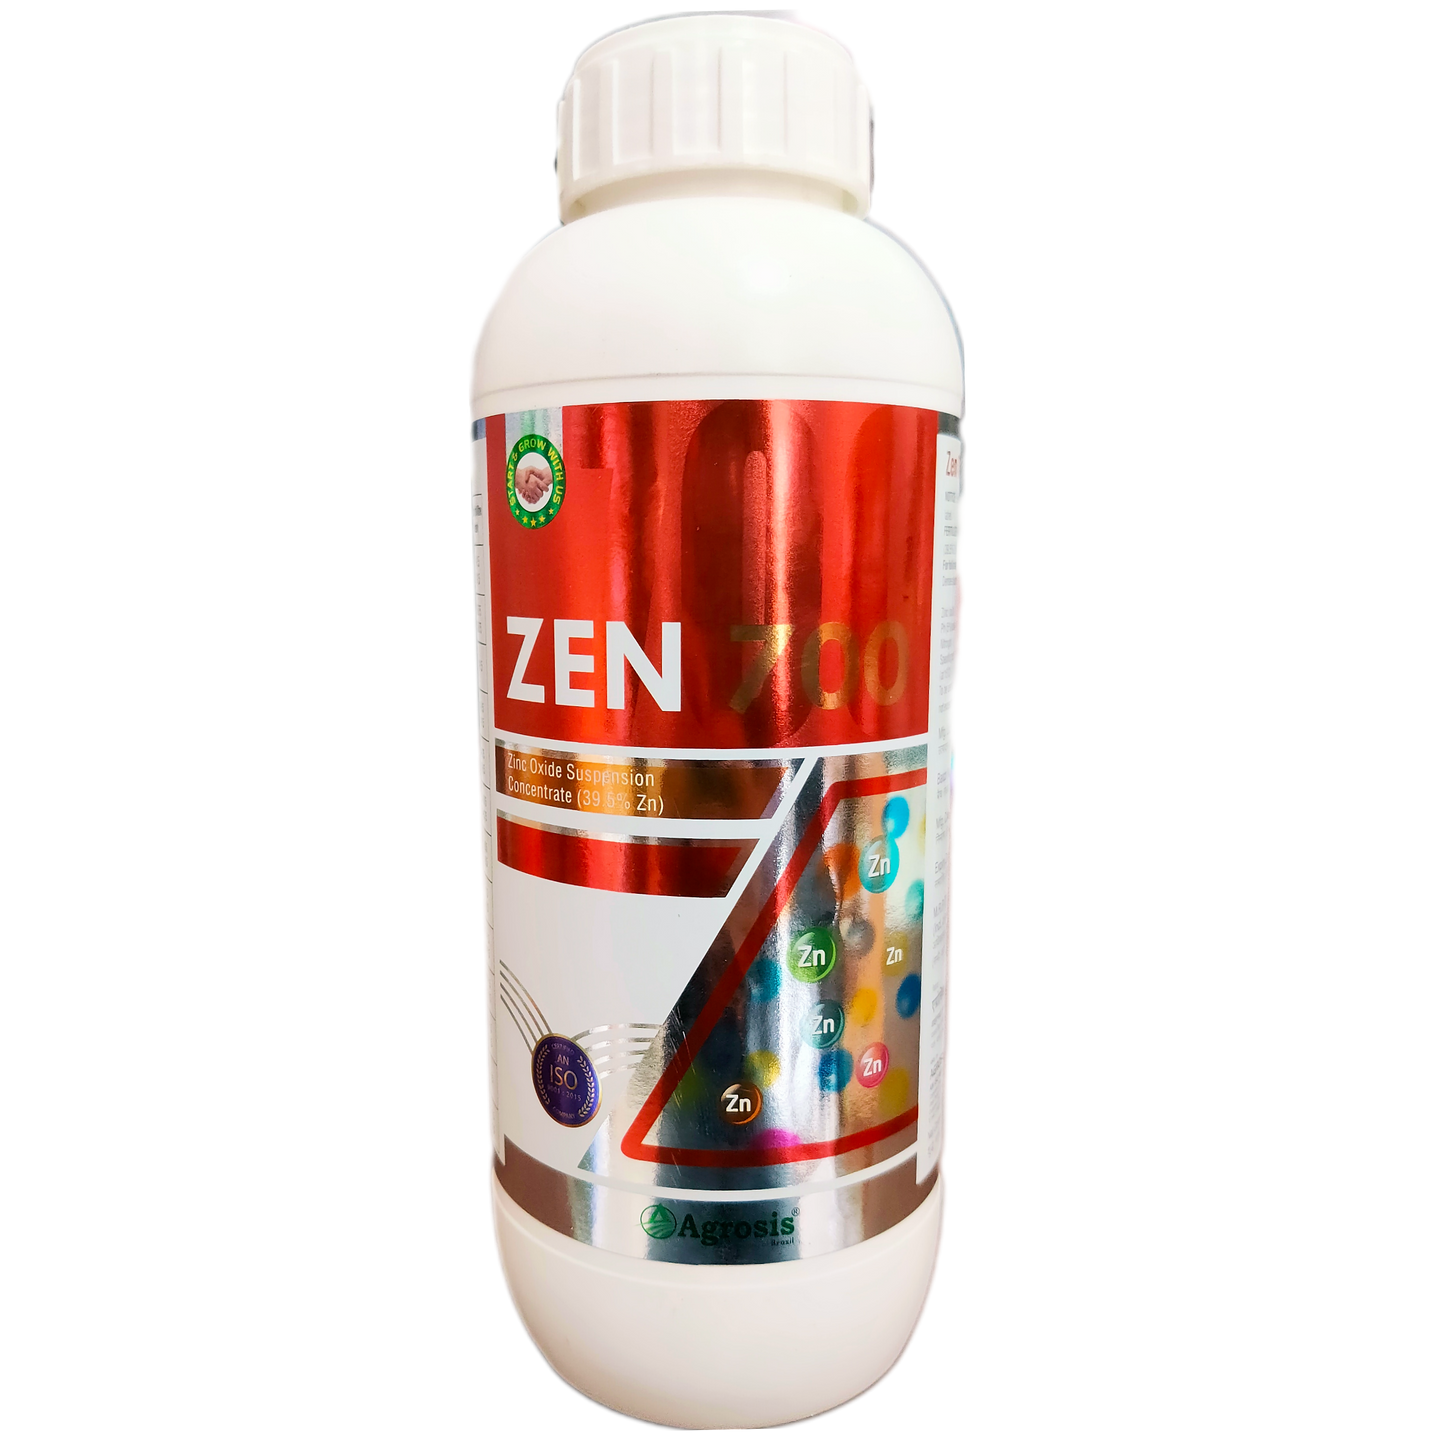 Zen700 - Zinc Oxide 39.5% Fertilizer